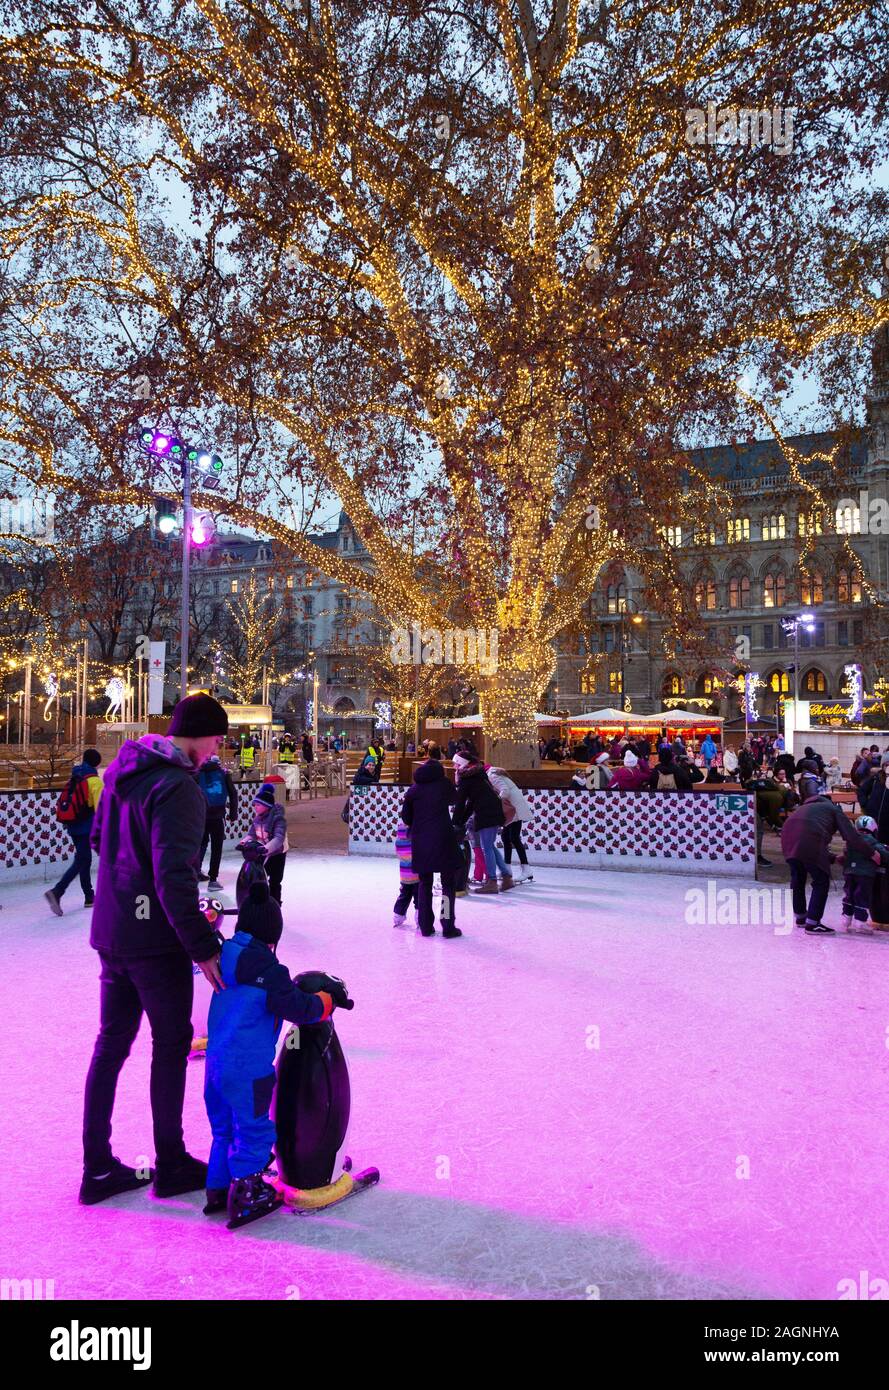 Wien Eislaufen - Menschen Eislaufen auf einer Freilufteisbahn, Rathaus Weihnachtsmarkt, Rathausplatz, Wien Österreich Europa Stockfoto